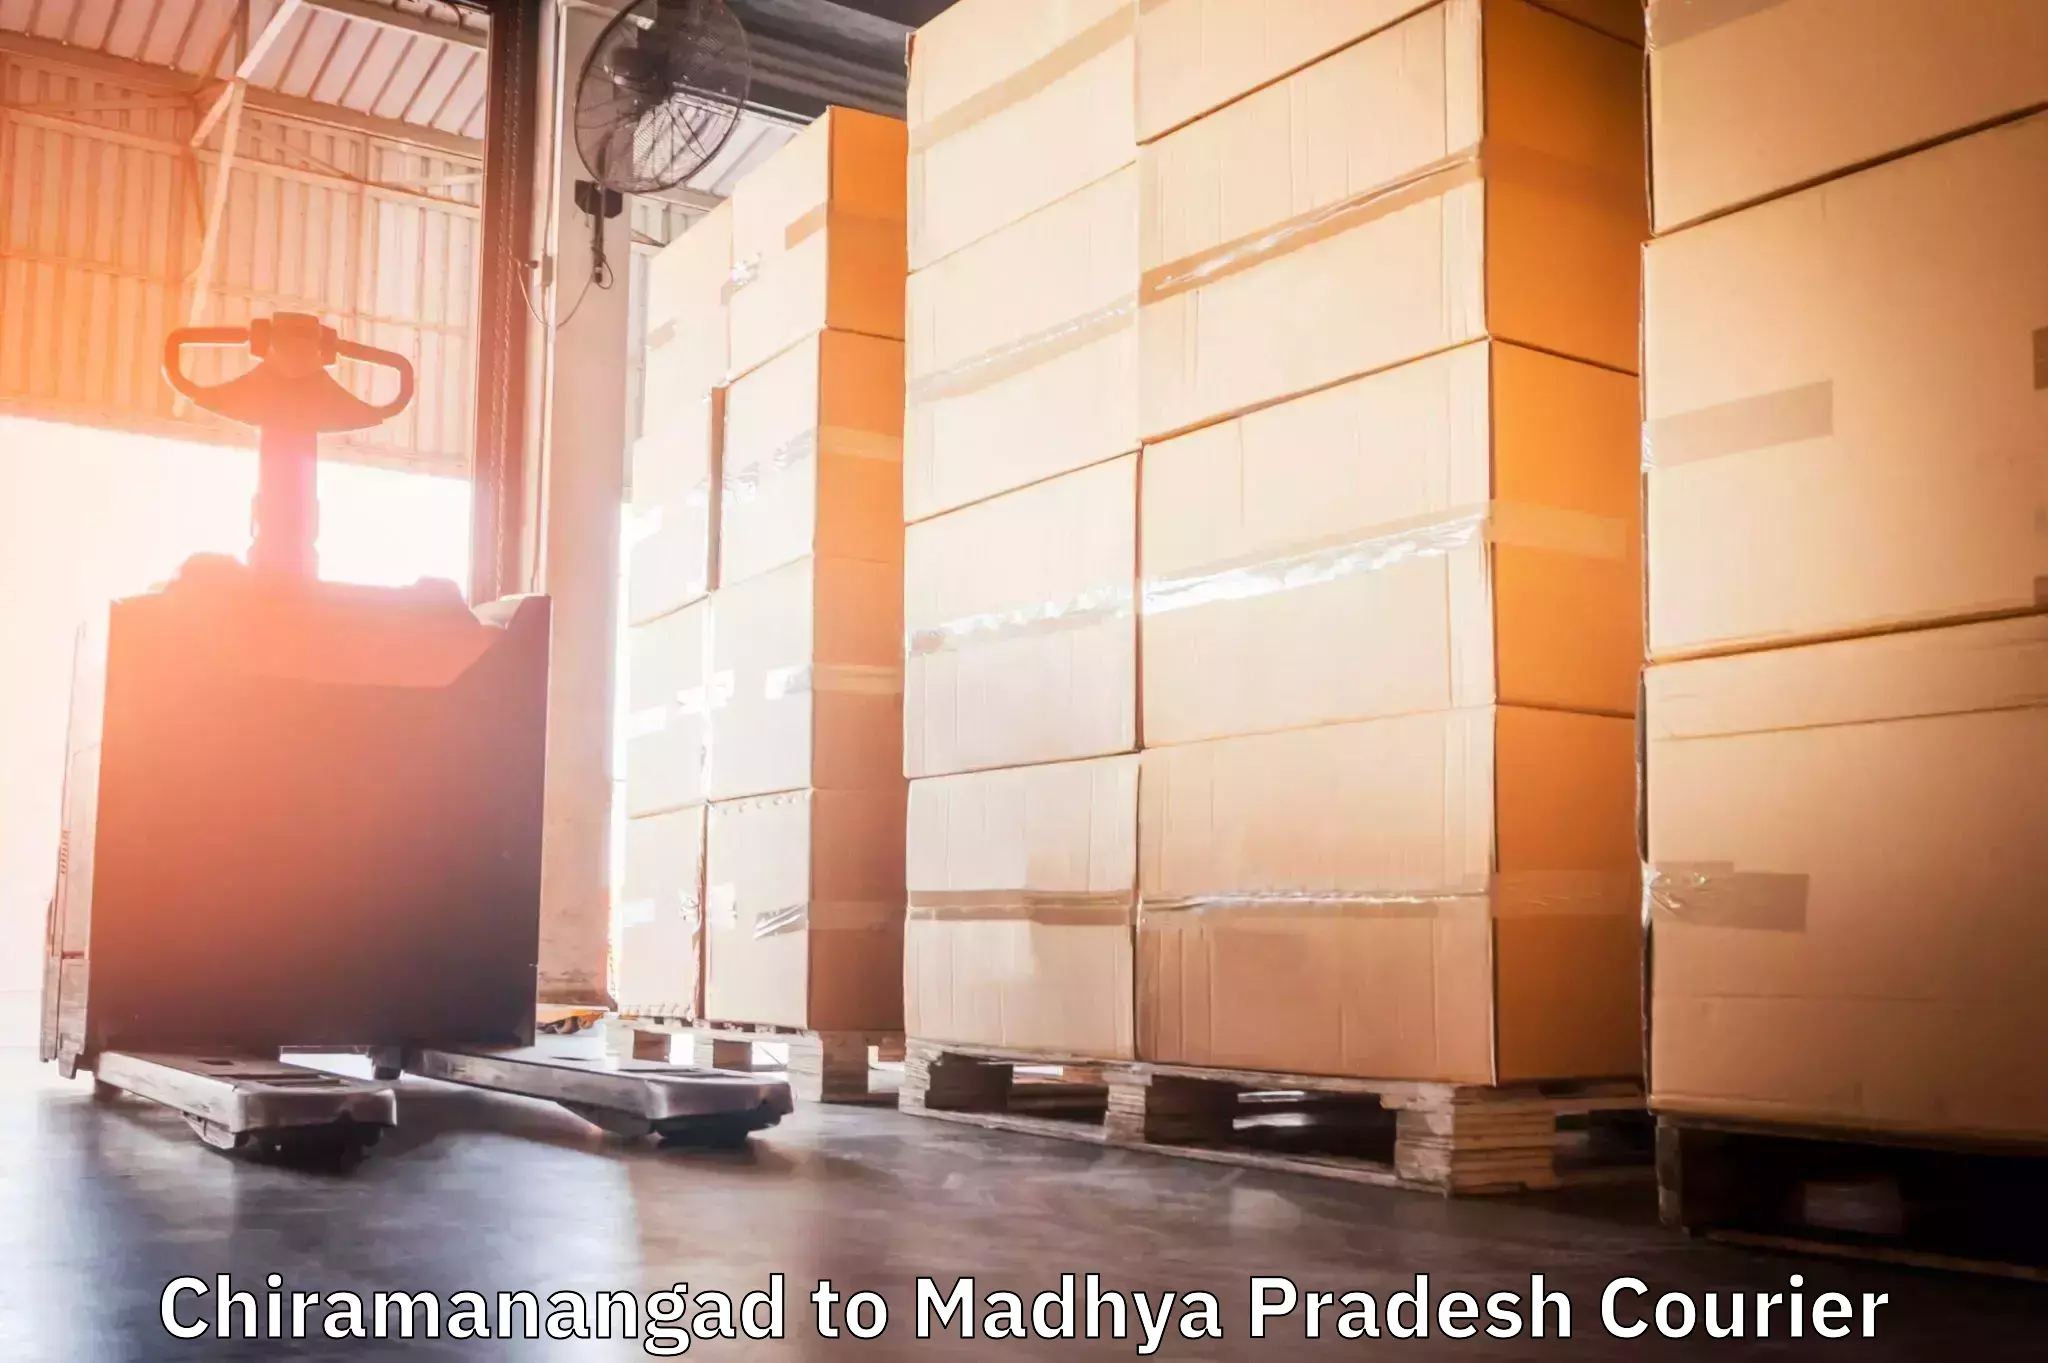 Reliable freight solutions Chiramanangad to Madhya Pradesh